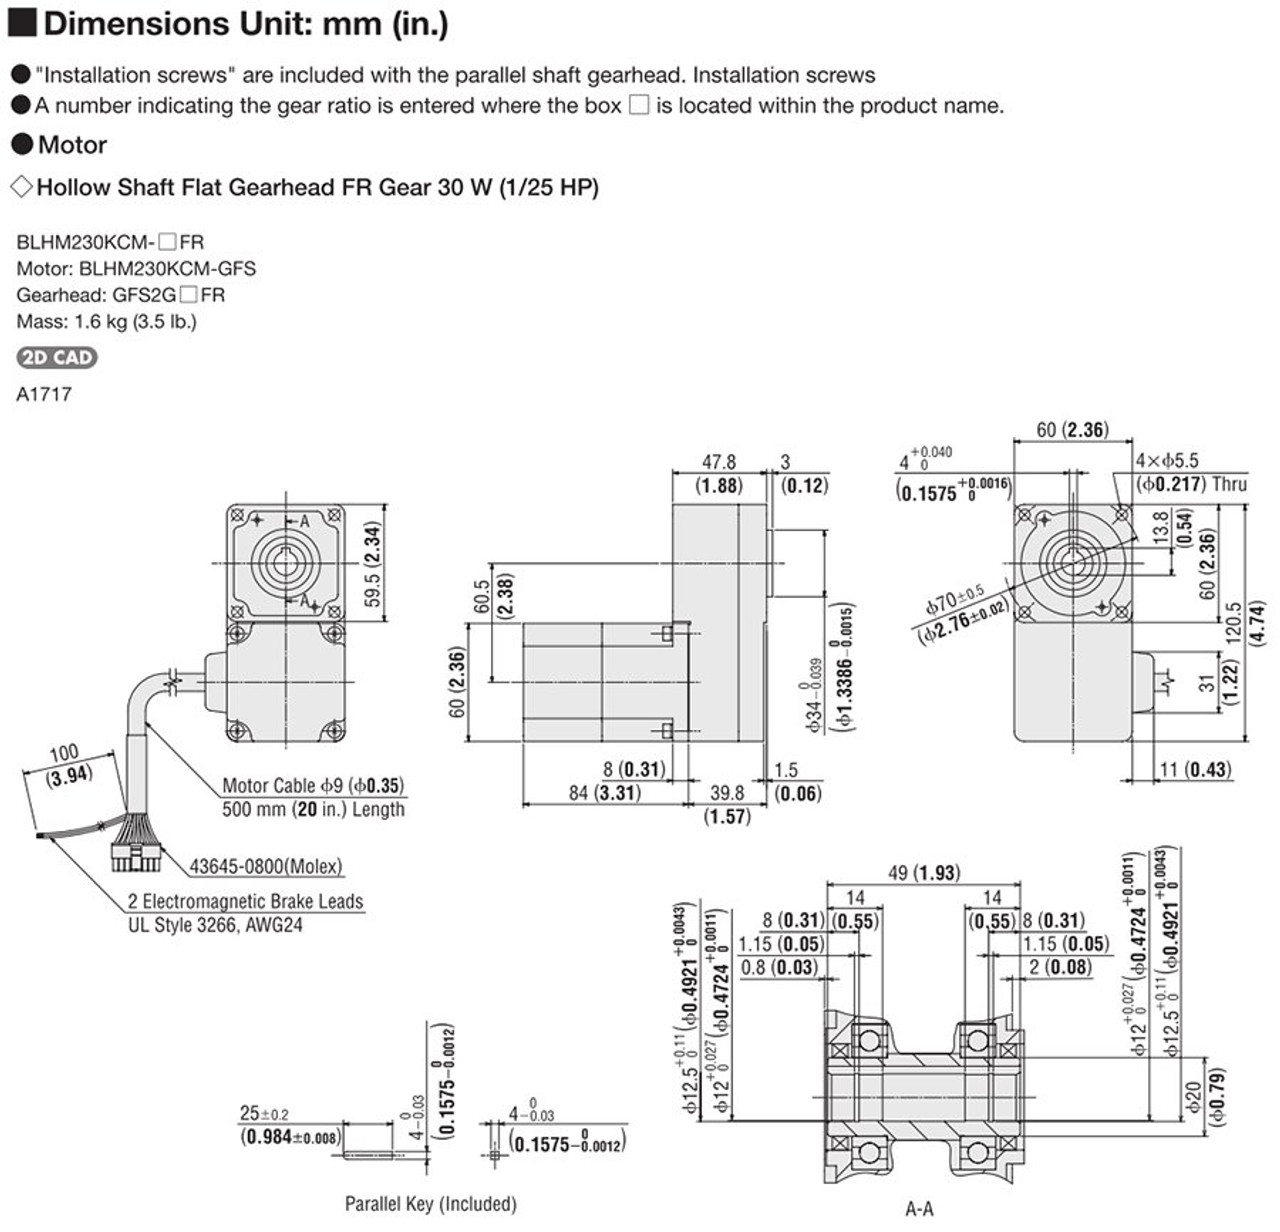 BLHM230KCM-5FR - Dimensions